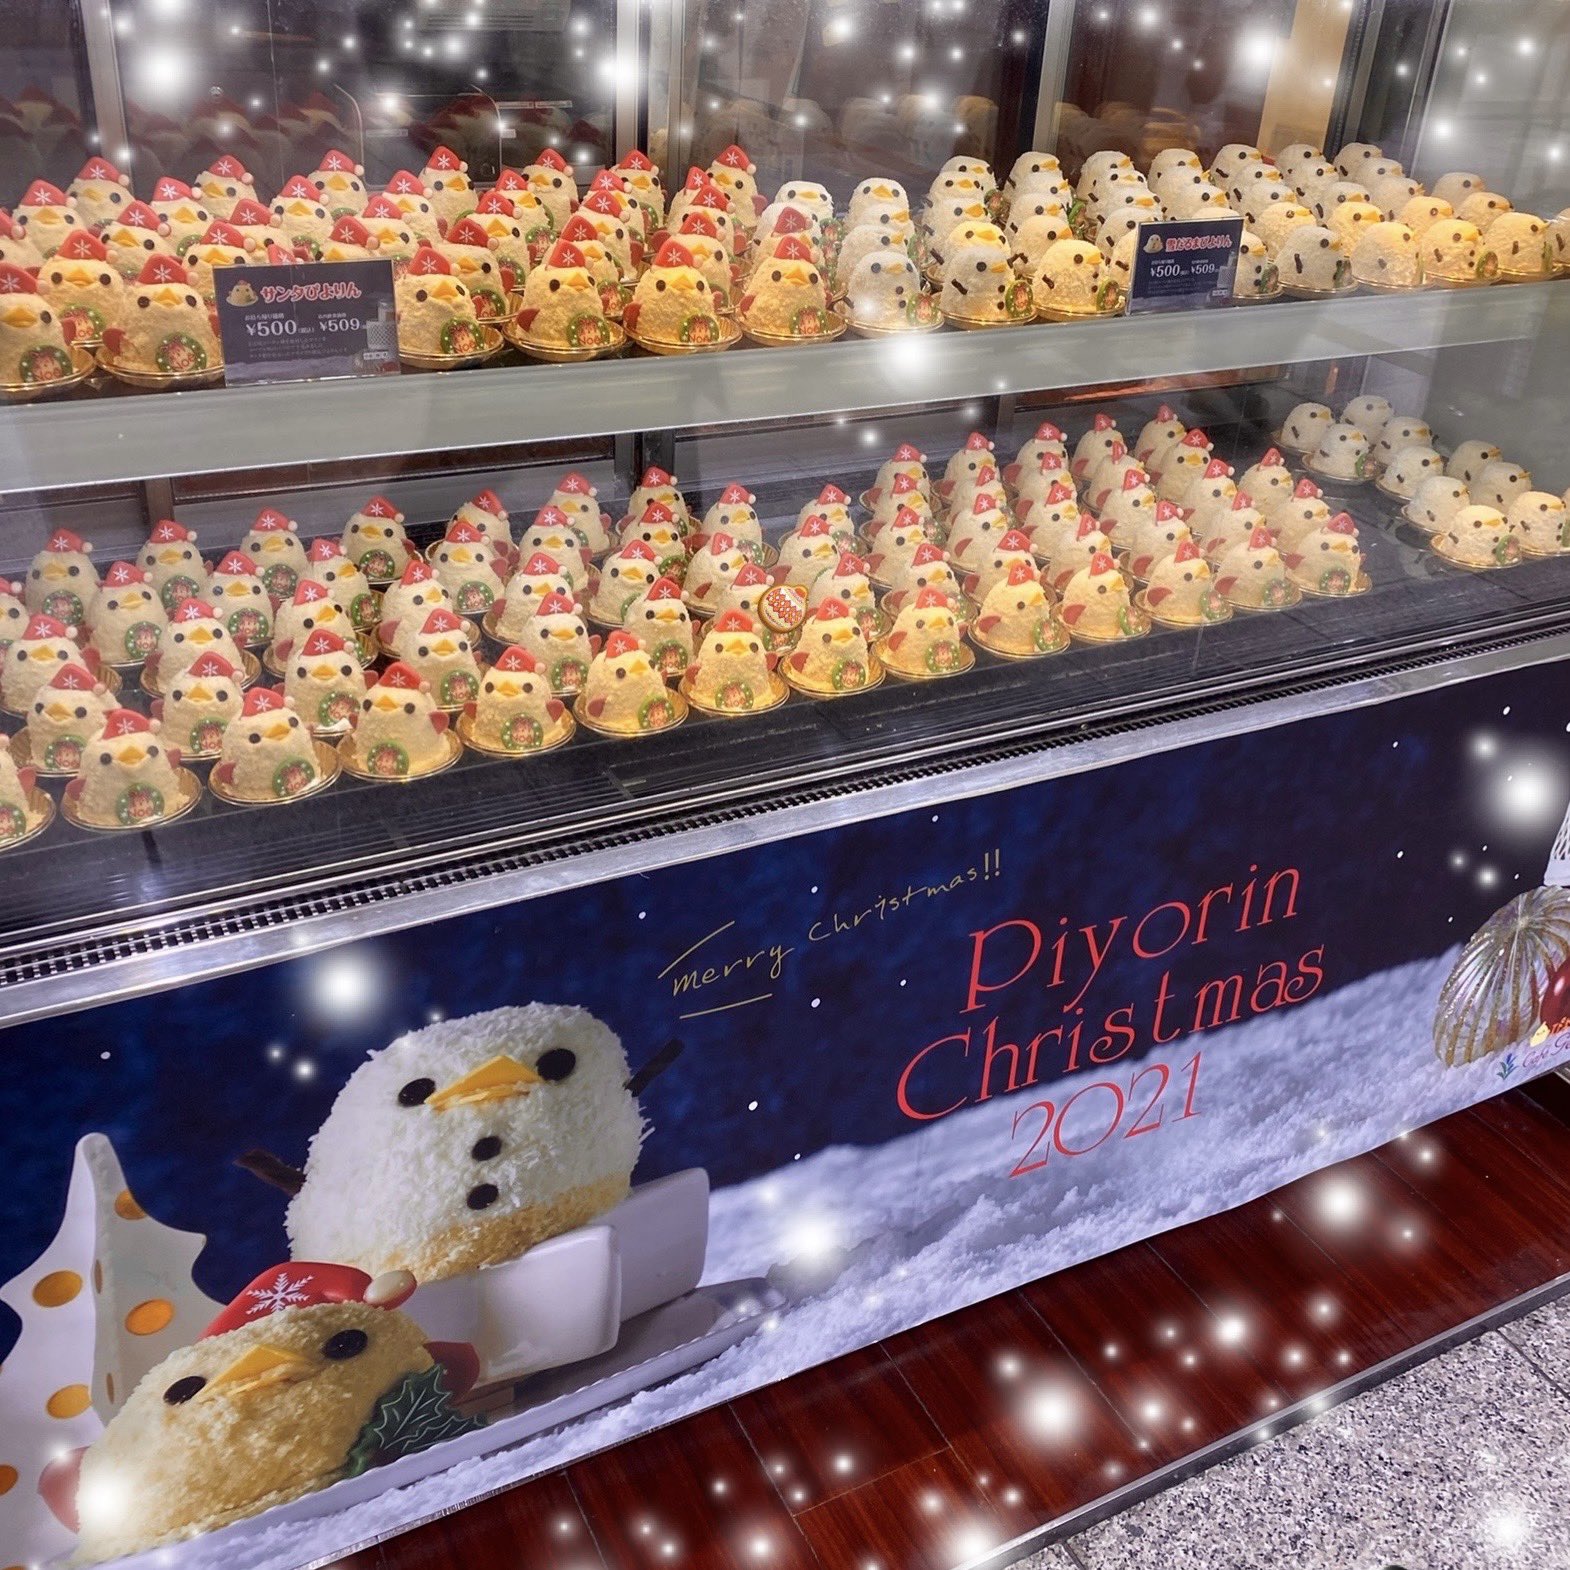 セール公式店 クリスマス☆雪だるま&ひよこ おもちゃ/人形